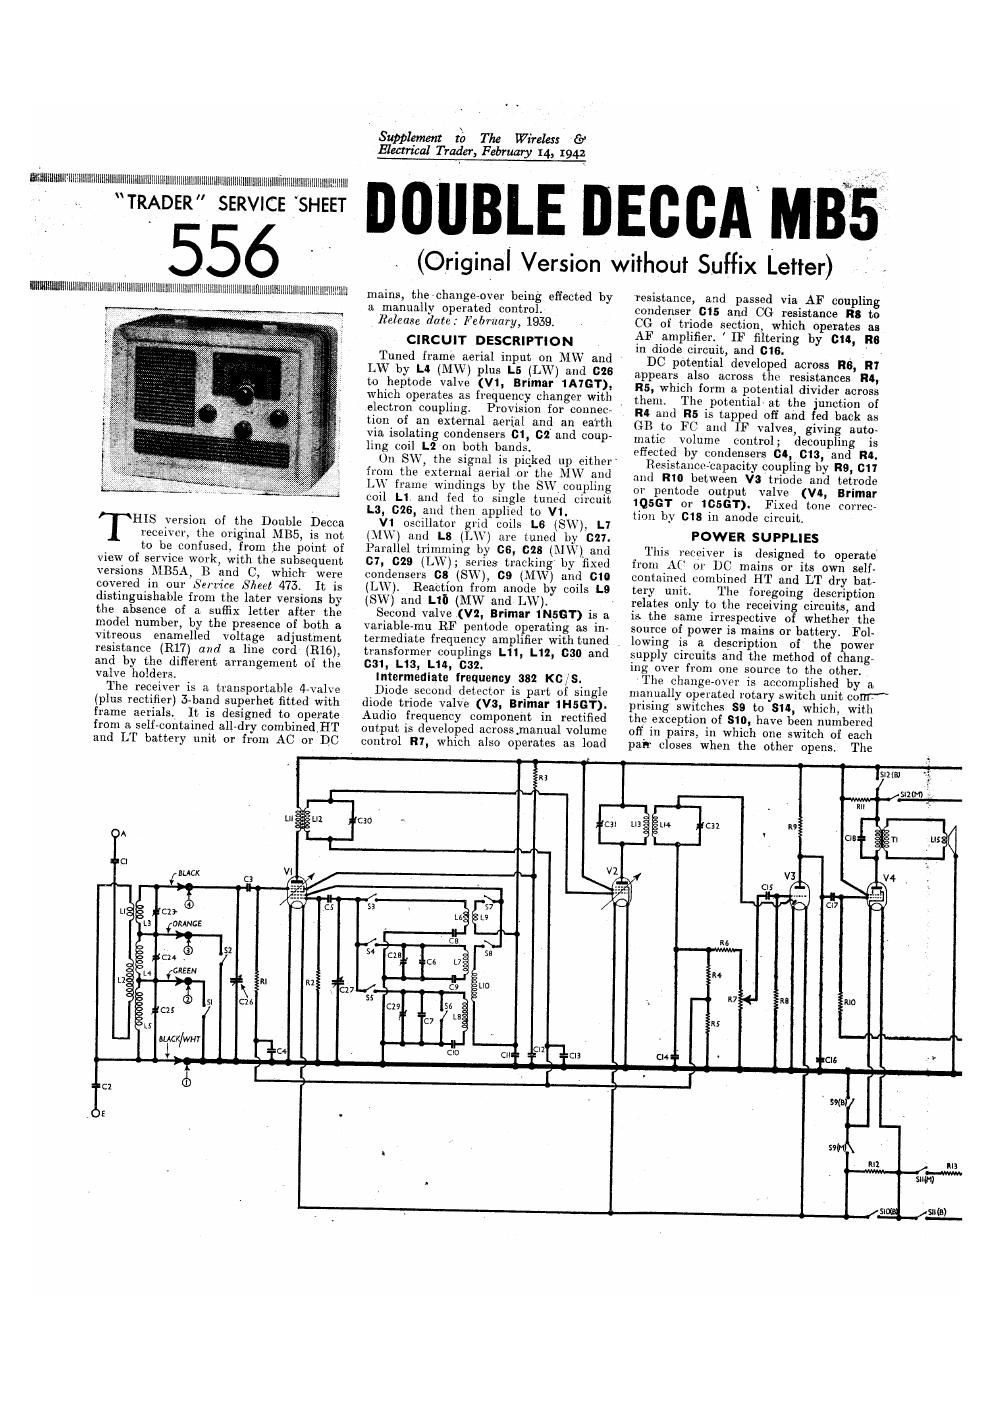 decca mb 5 service manual